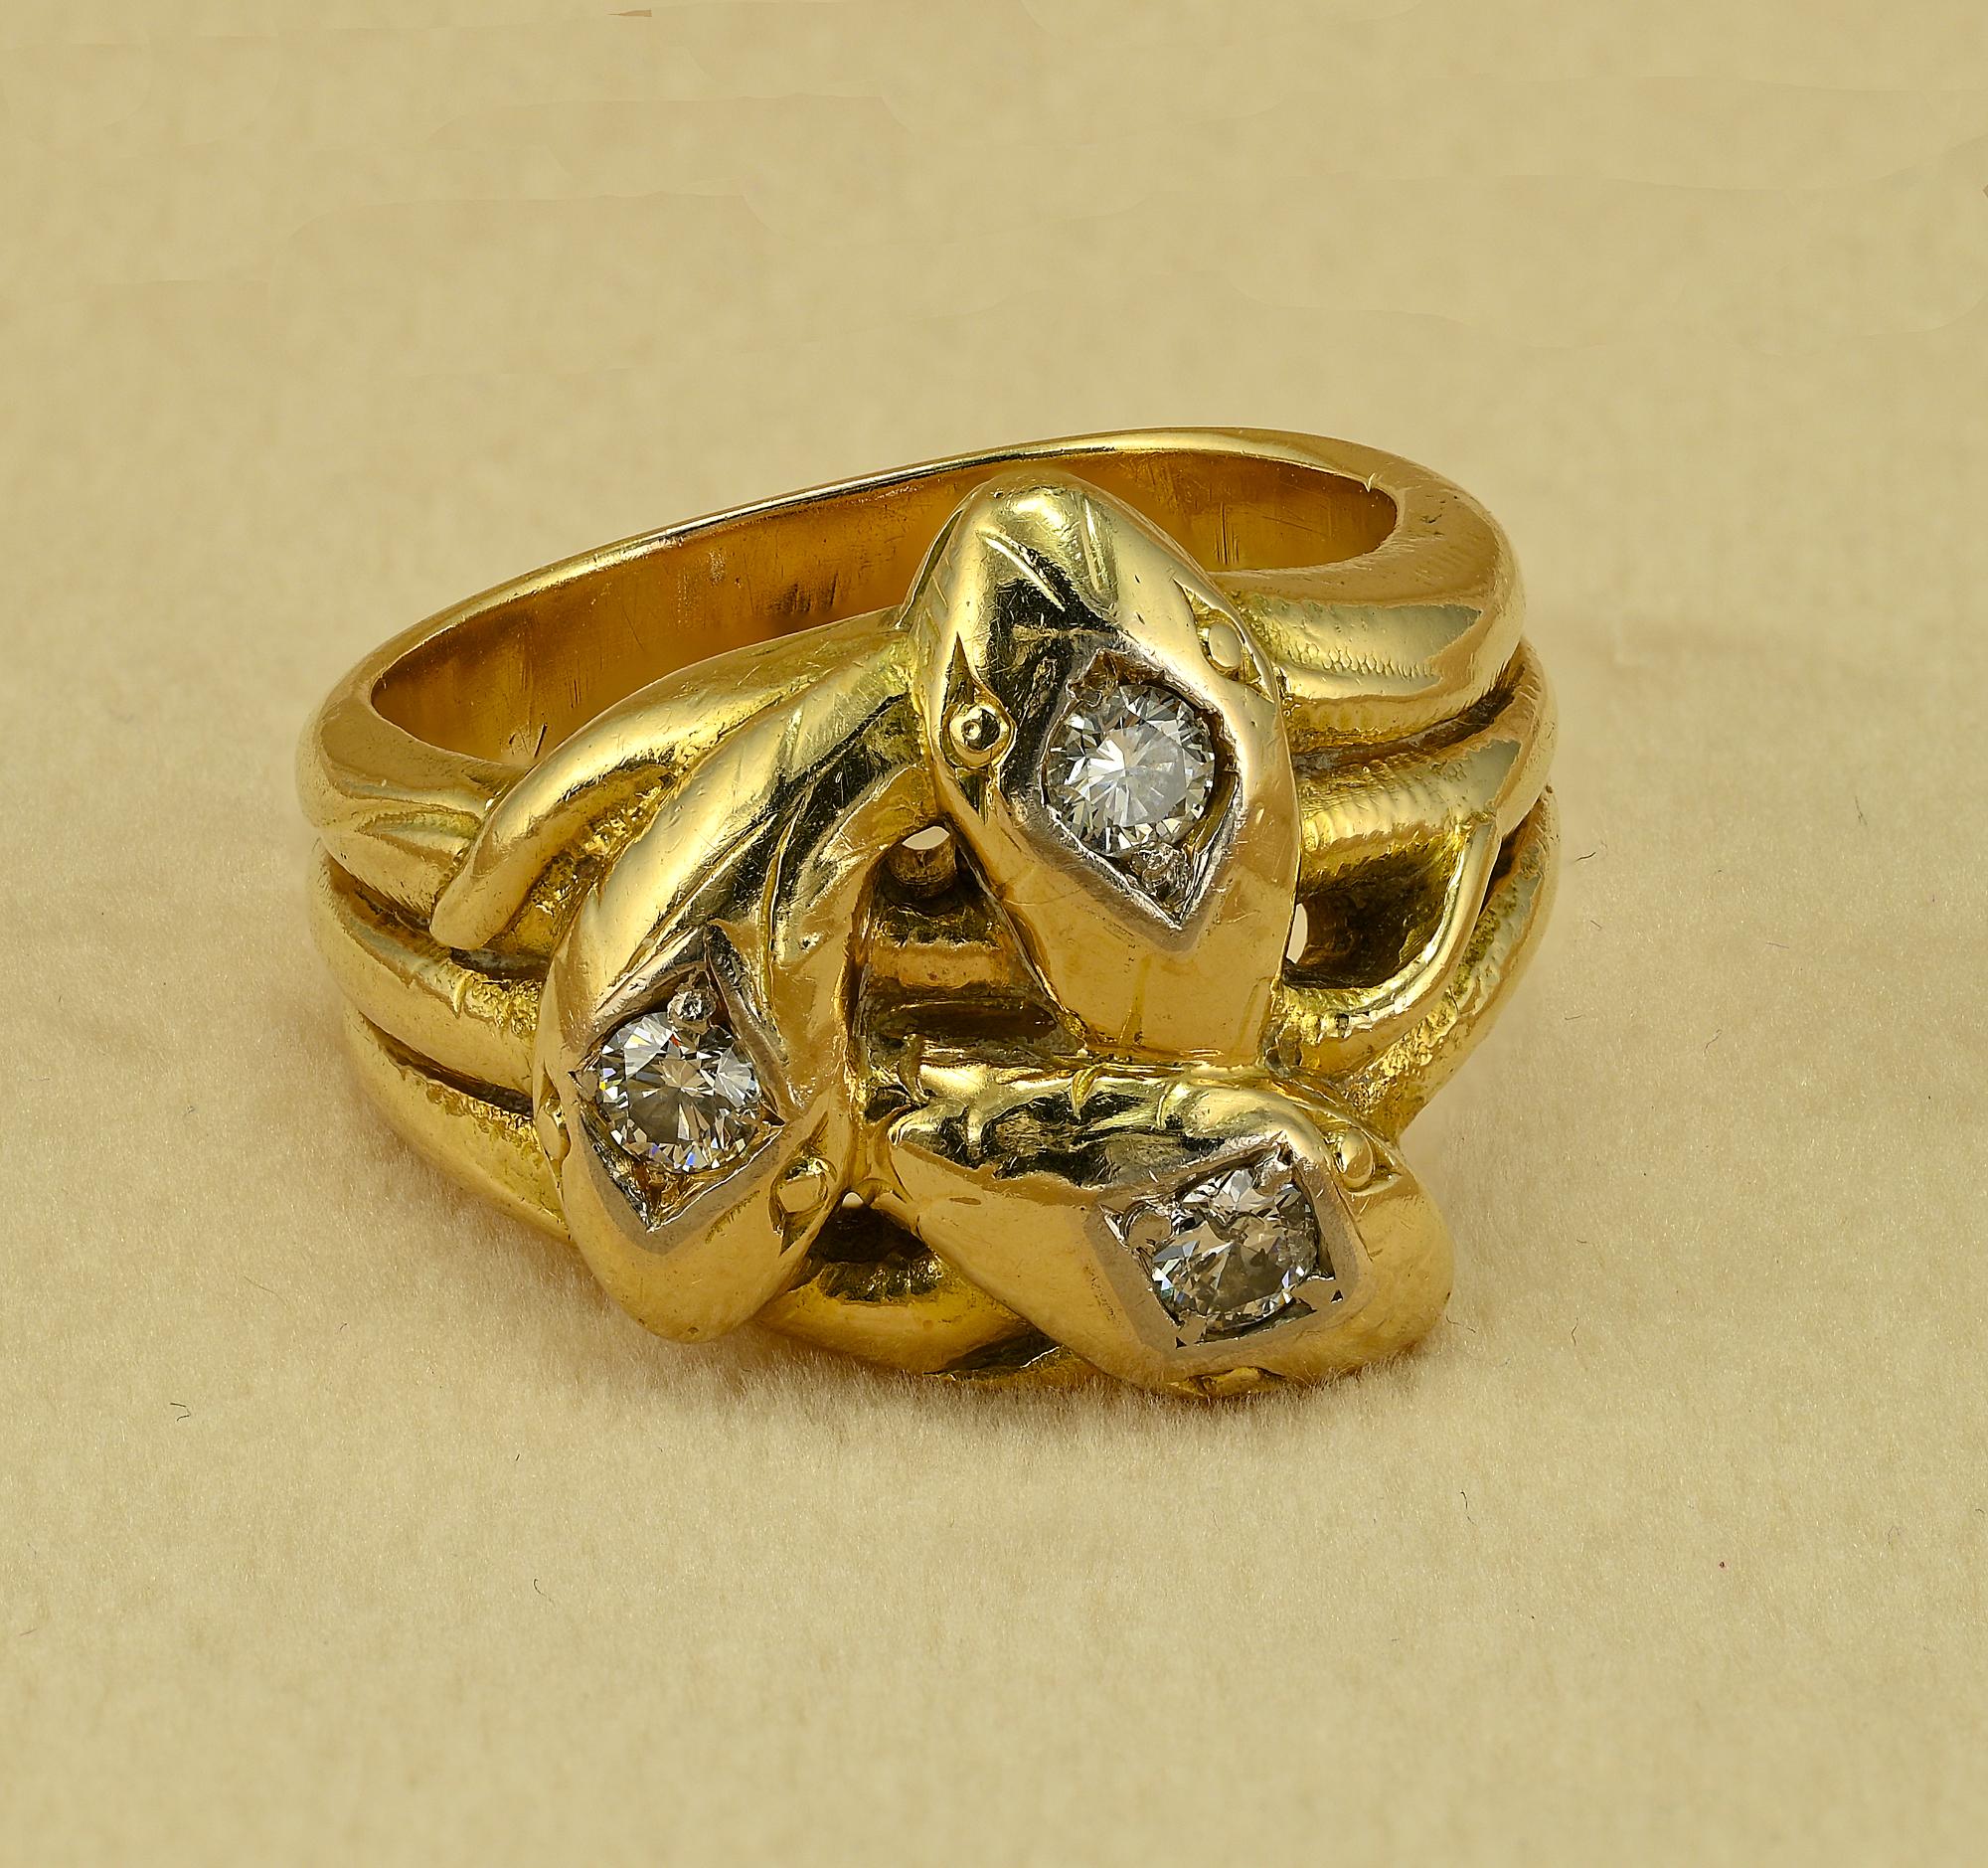 Dieser prächtige antike Schlangenring stammt aus dem Jahr 1915
Handgefertigt aus massivem 14 Kt Gold, innen gestempelt mit europäischem 585, was für 14 KT steht.
Wunderschönes Design mit dreifach verflochtenen Schlangenköpfen Diamantbesatz
Ca. .45